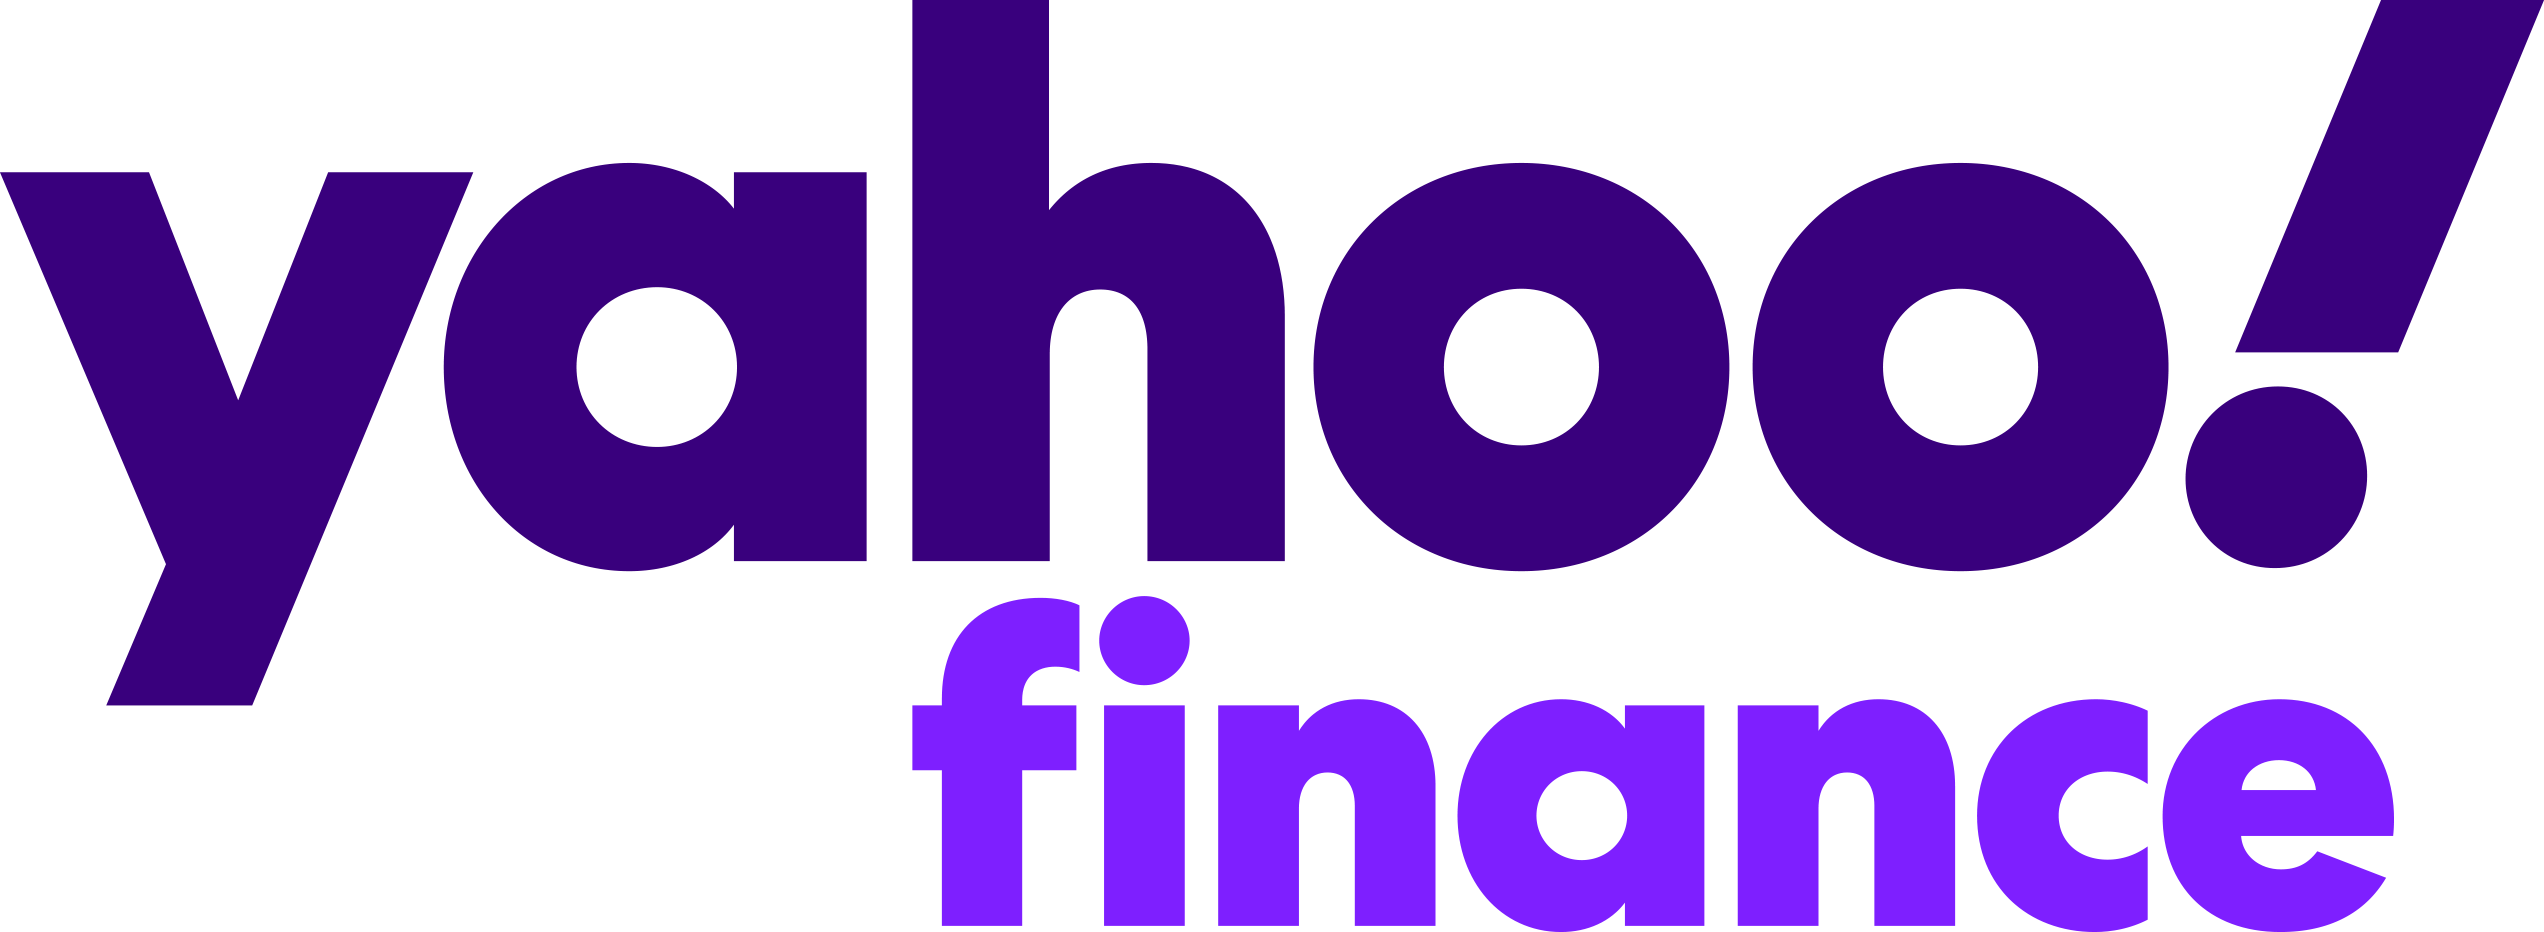 Logotipo de Yahoo Finanzas - Cereus Financial Advisors